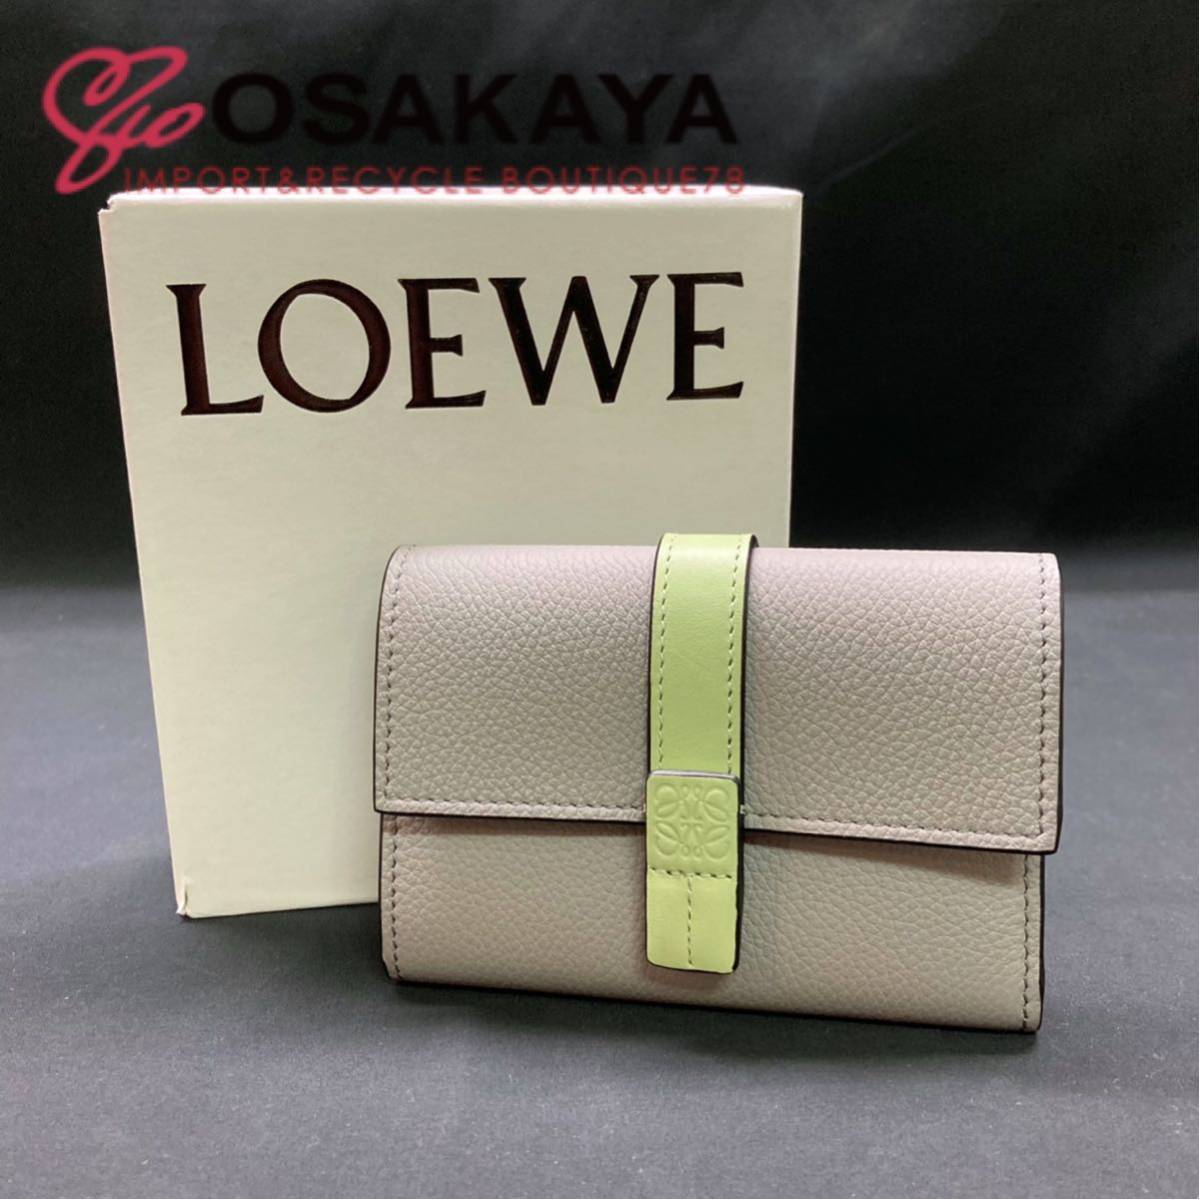  не использовался LOEWE балка TIKKA ru бумажник маленький C660S86X01 кожаный салон -ru серый свет бледный зеленый Loewe кошелек подарок устройство на работу праздник .